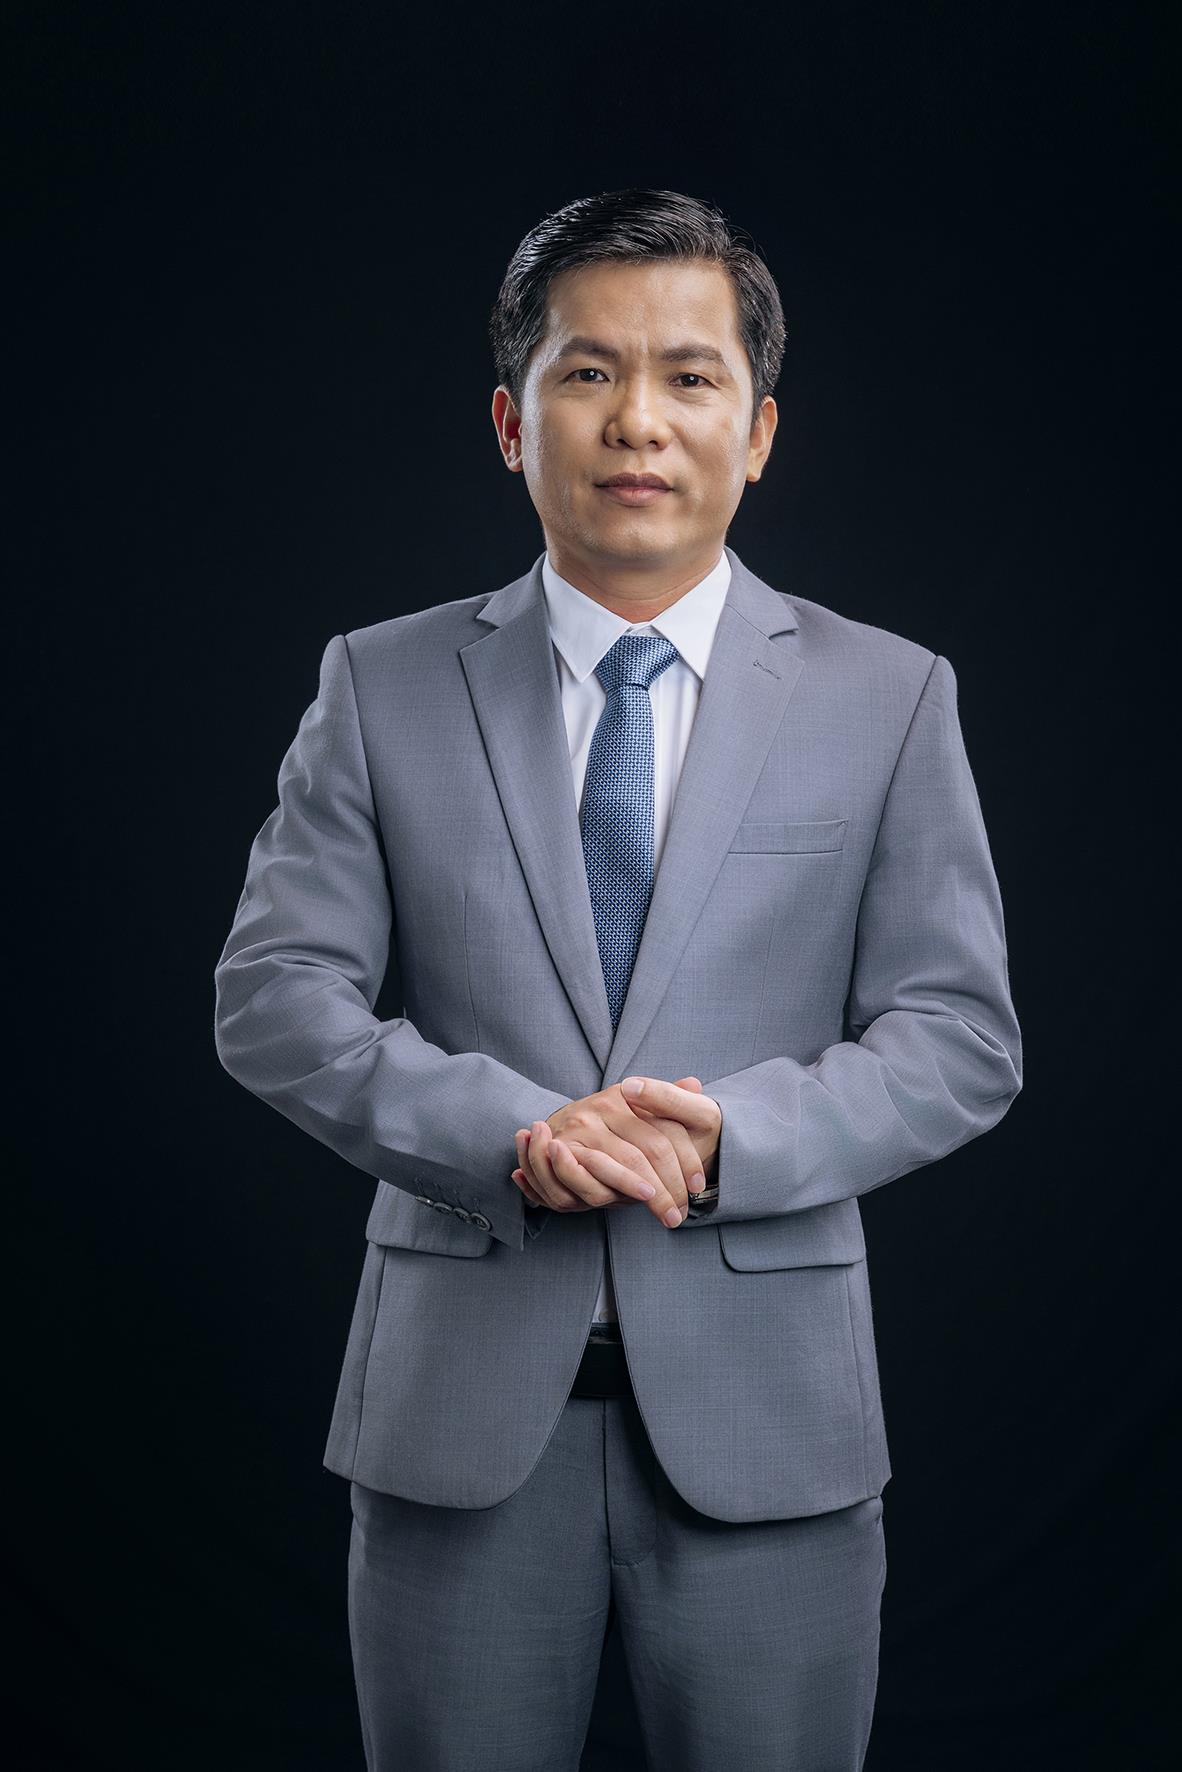 CEO Hoàng Hữu Thắng - Chủ tịch HĐQT Công ty Cổ phần Tập đoàn Kỹ thuật và Công nghiệp Việt Nam (Intech Group): Doanh nhân truyền cảm hứng cho thế hệ trẻ